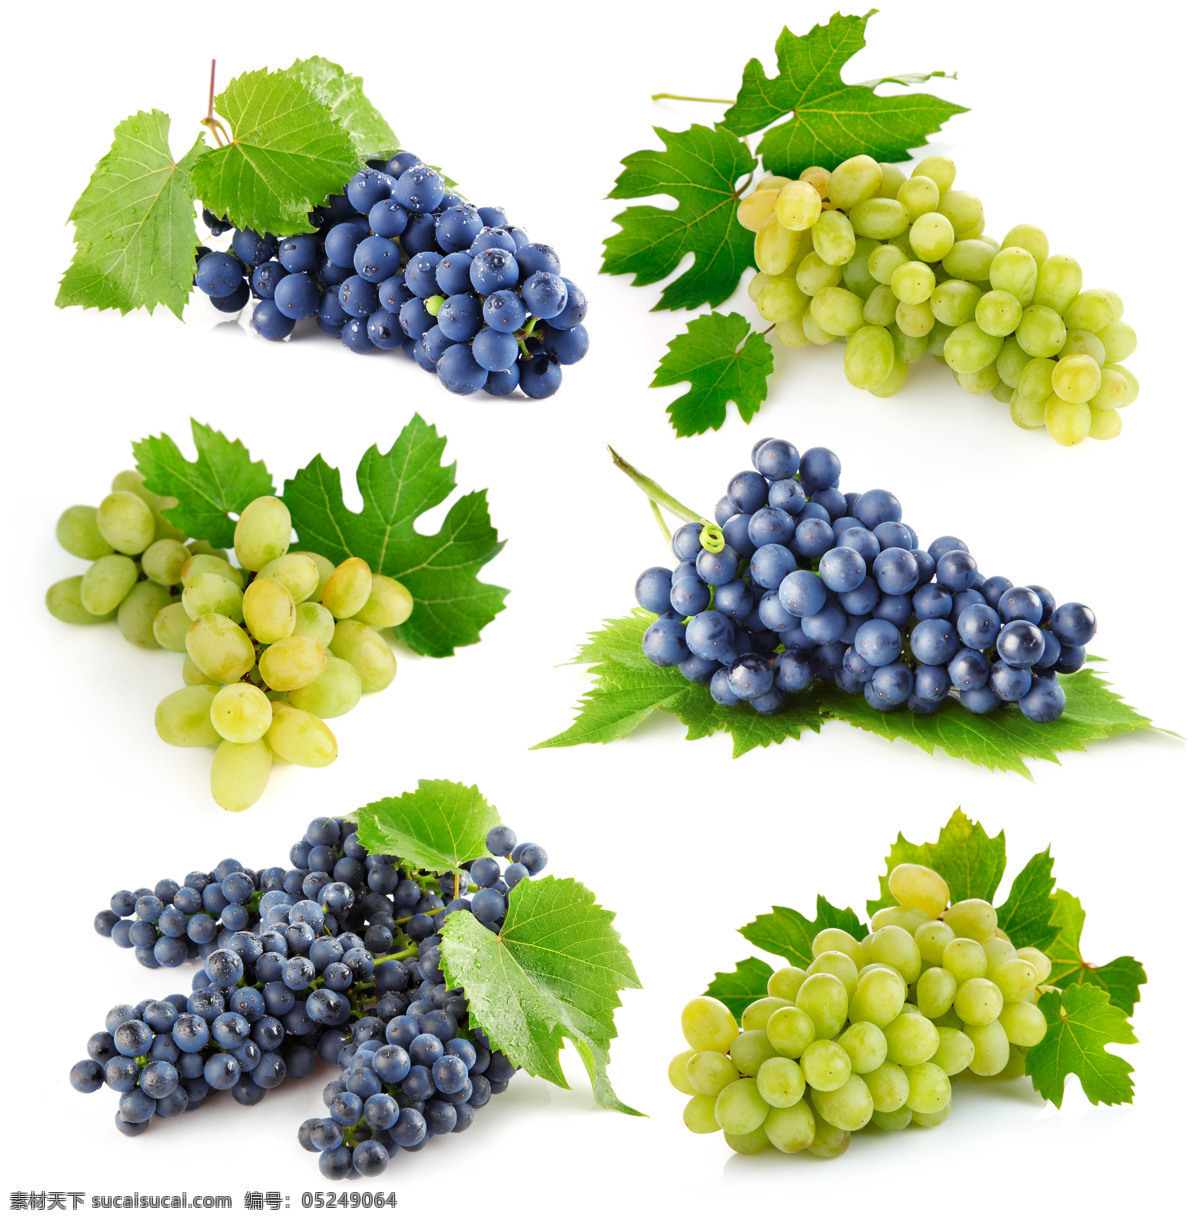 葡萄 素材图片 葡萄素材 葡萄摄影 青葡萄 叶子 绿叶 葡萄叶 摄影图库 蔬菜图片 餐饮美食